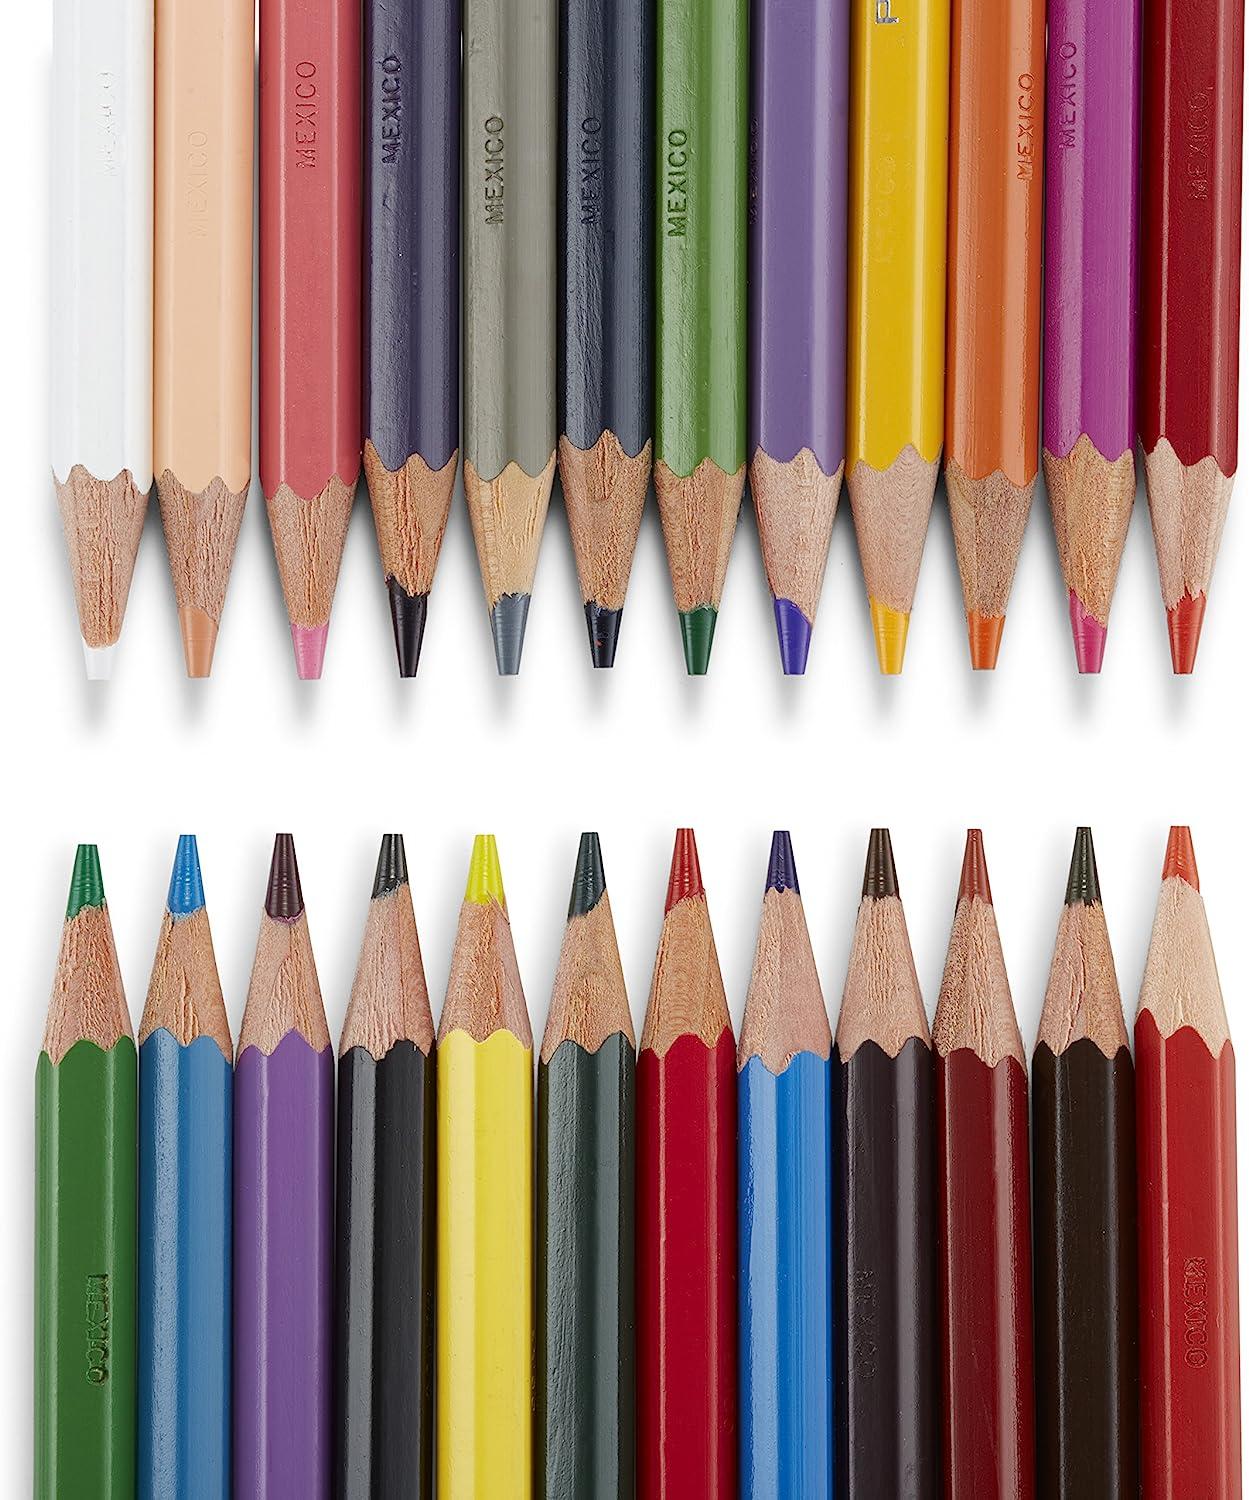 Prismacolor Col-Erase 24 Piece Erasable Pencil Set